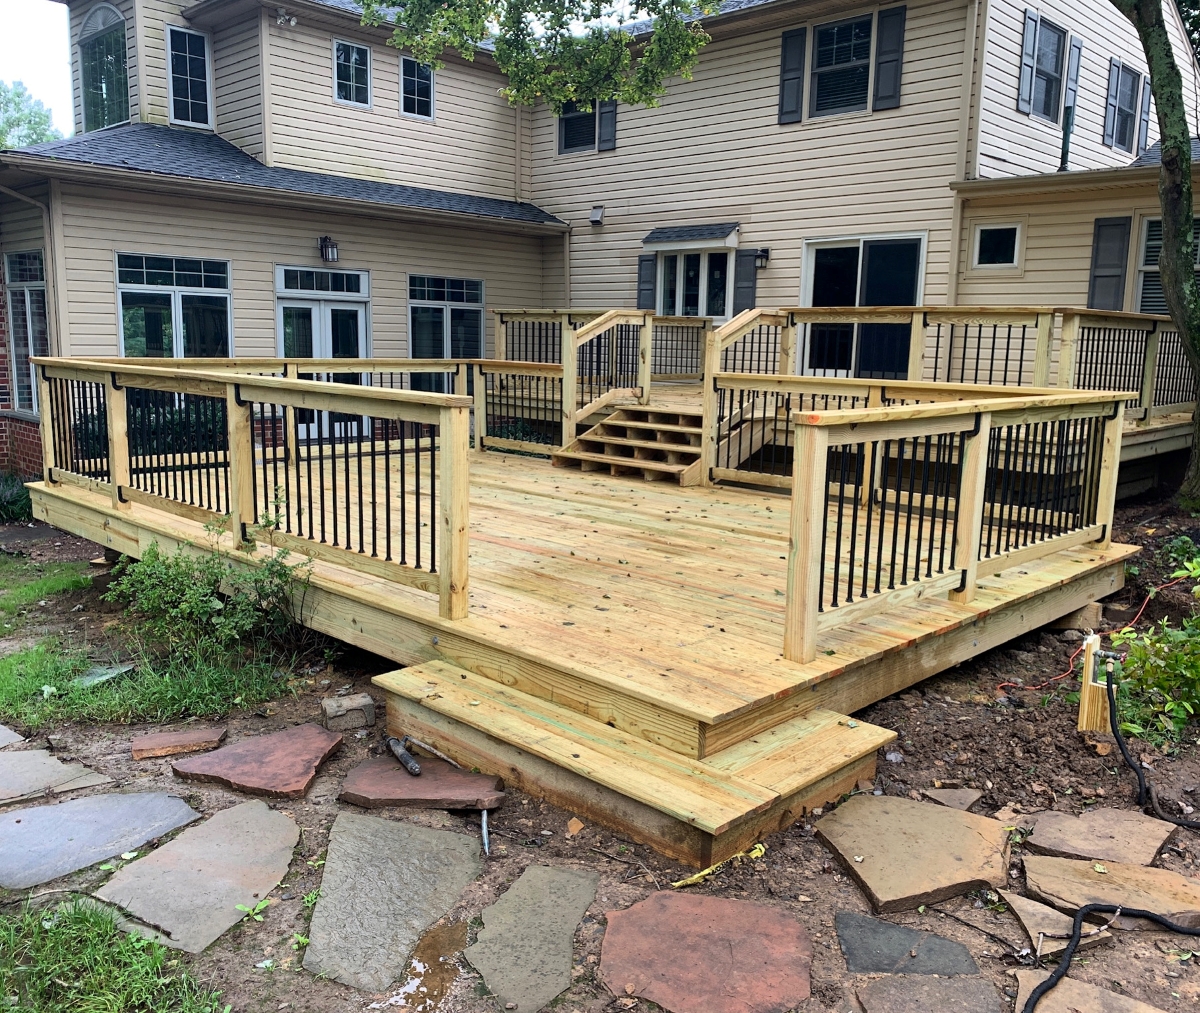 A newly built wooden deck.